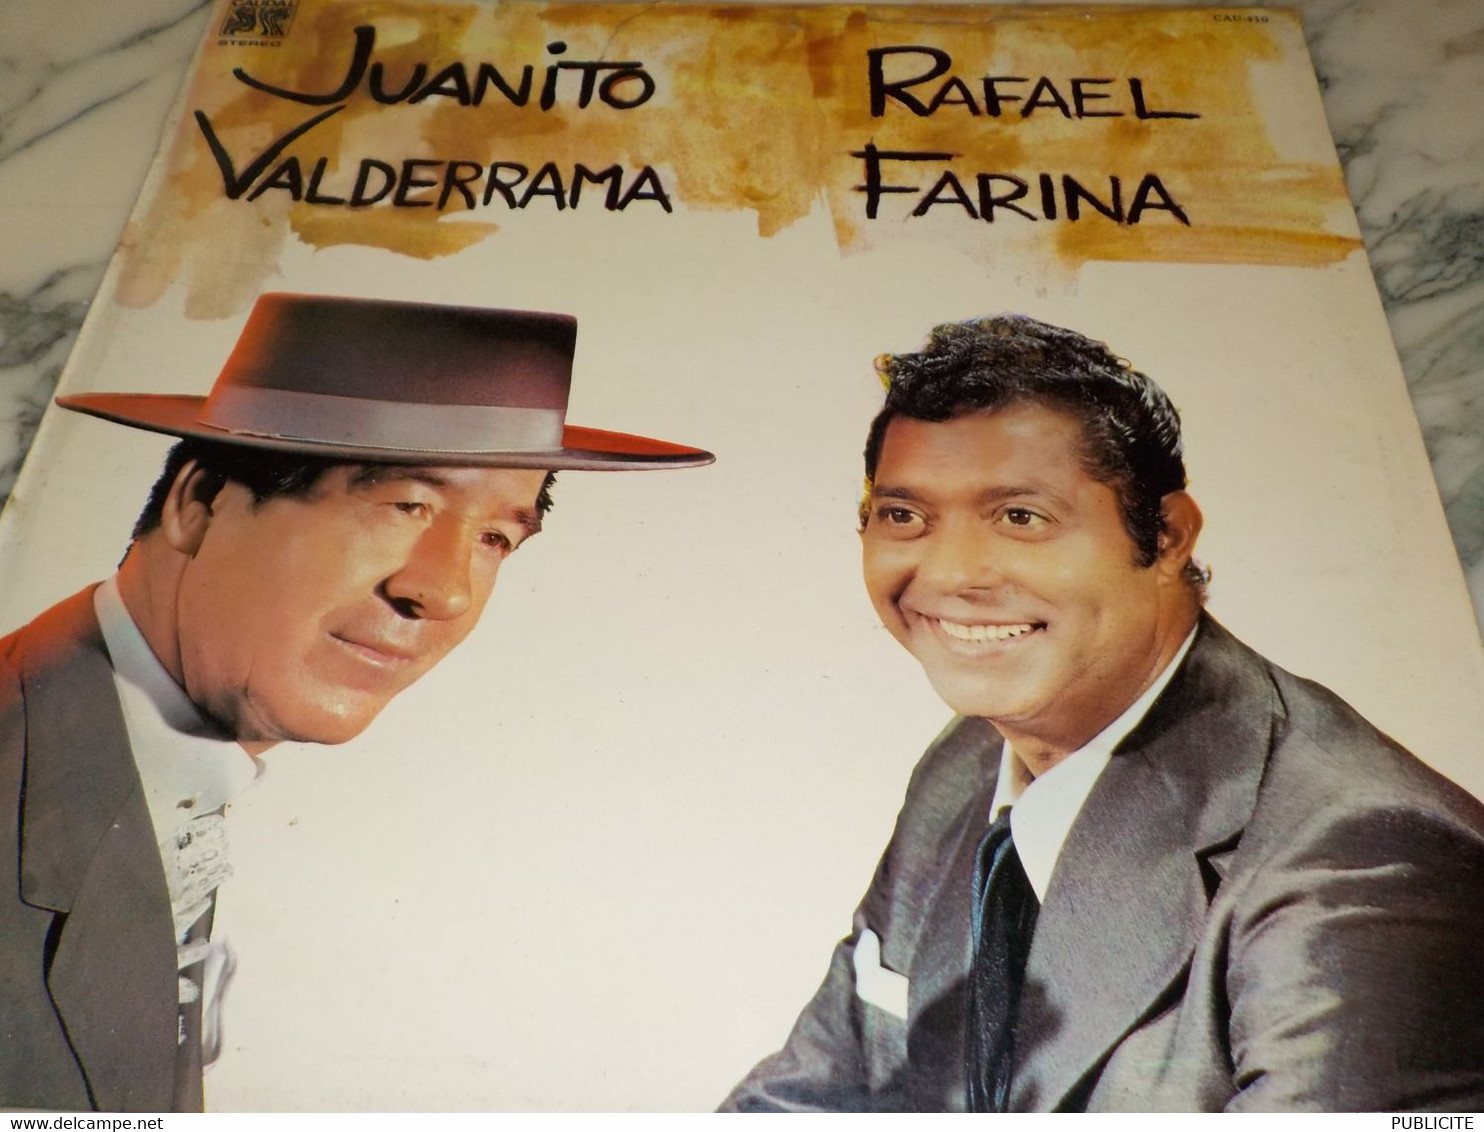 DISQUE 33 TOURS JUANITO VALDERRAMA ET RAFAEL FARINA 1976 - Autres - Musique Espagnole